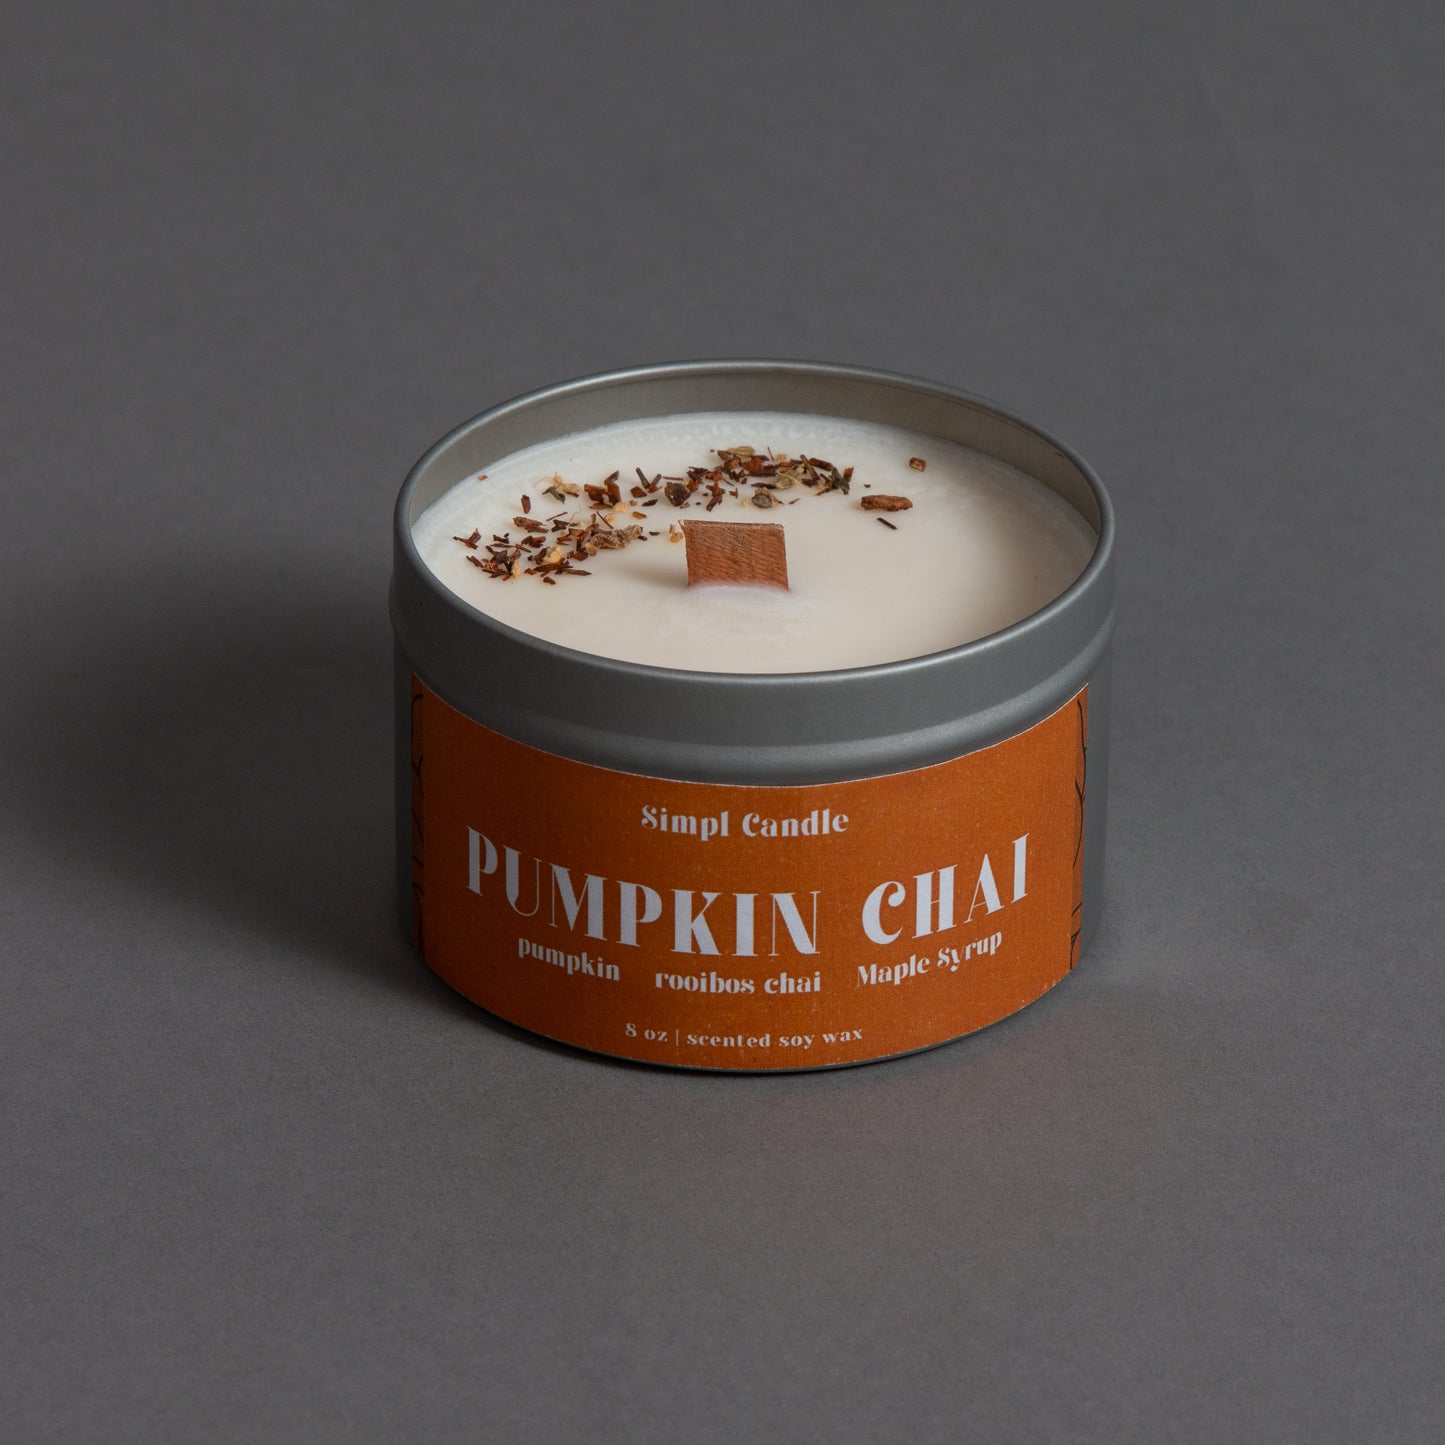 Pumpkin Chai | Pumpkin + Rooibos Chai + Maple Syrup